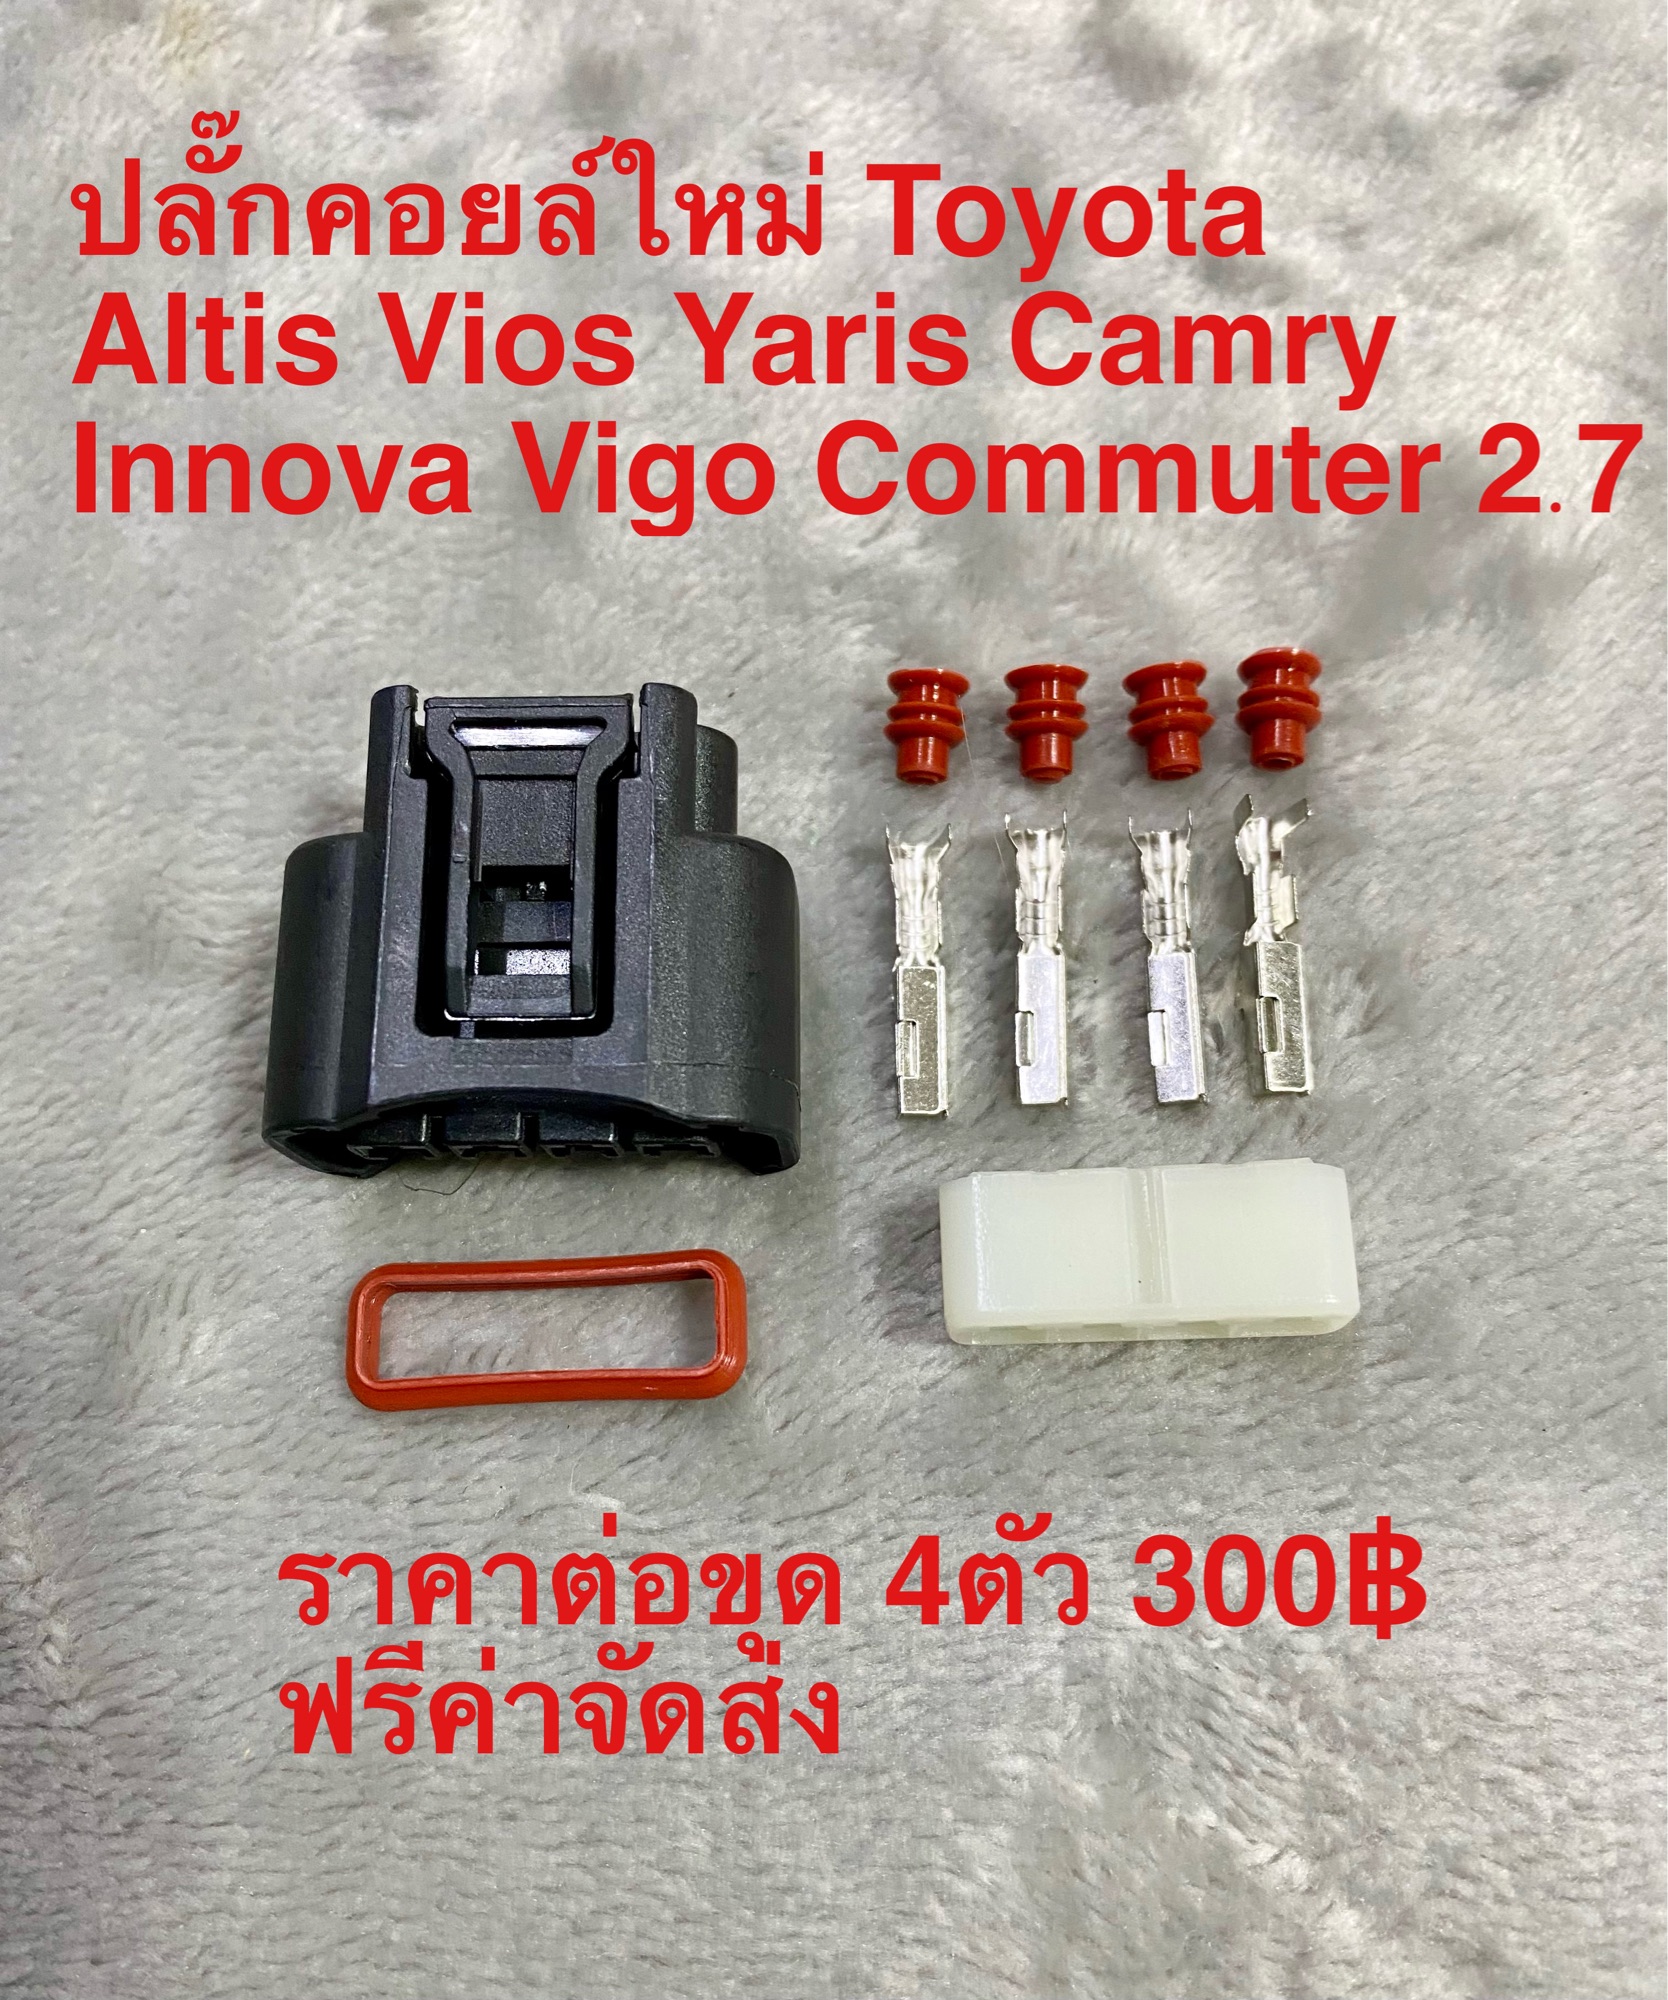 ปลั๊กคอยล์ใหม่ สำหรับ Toyota ชุด 4ตัว 300฿ จัดส่งฟรี